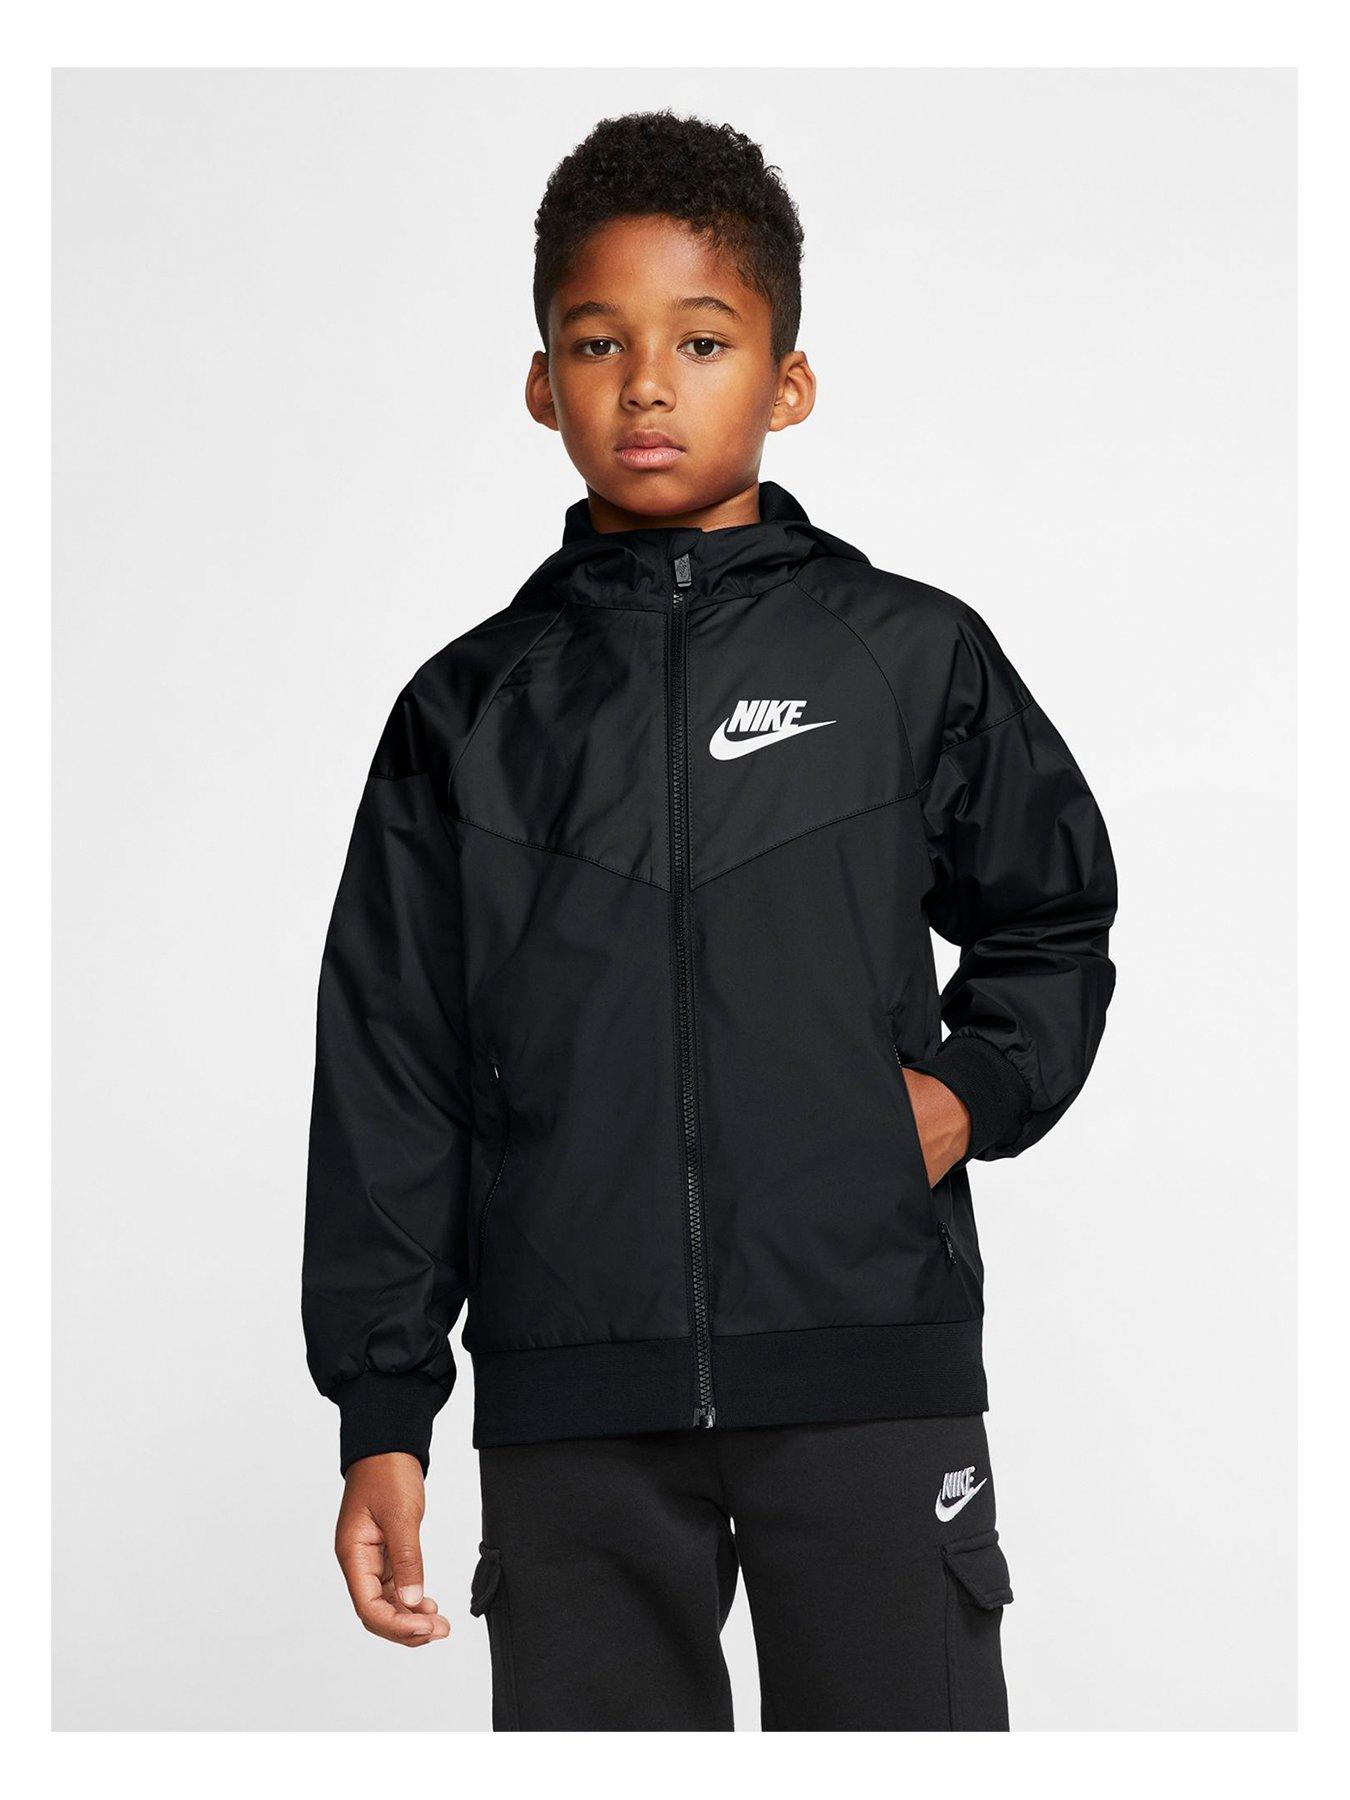 Coats jackets | Boys clothes | & baby | Nike | Very Ireland